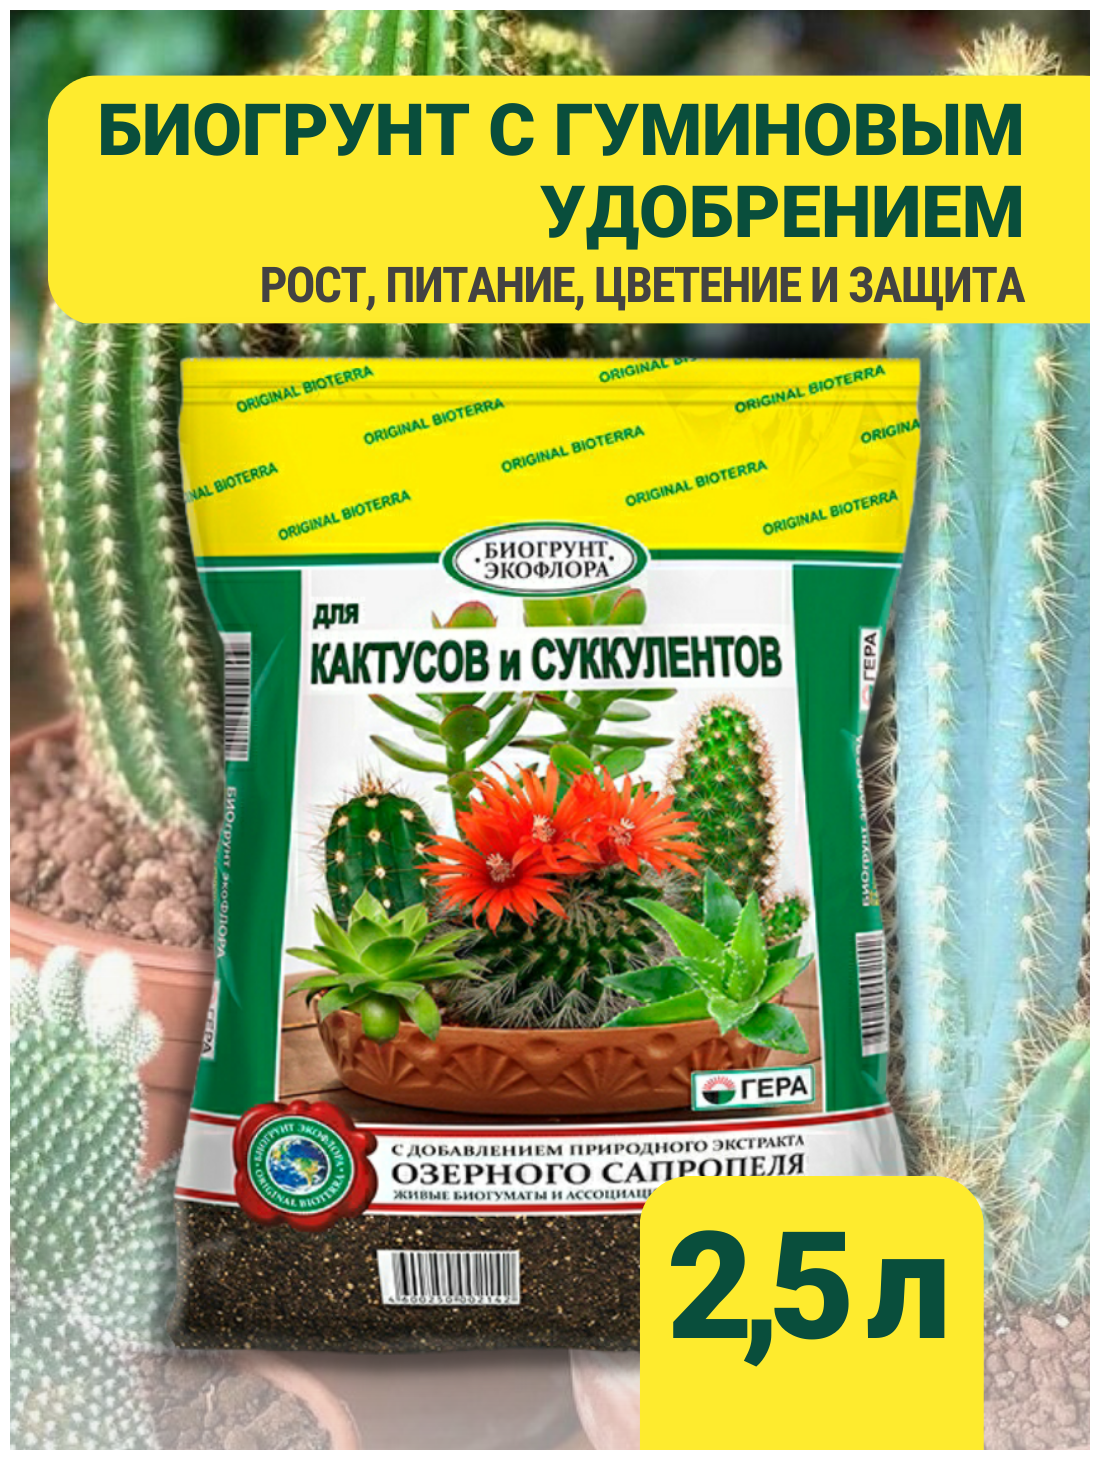 Грунт для кактусов и суккулентов домашних растений и сада с гуминовым удобрением 1 пакет 2,5 литра